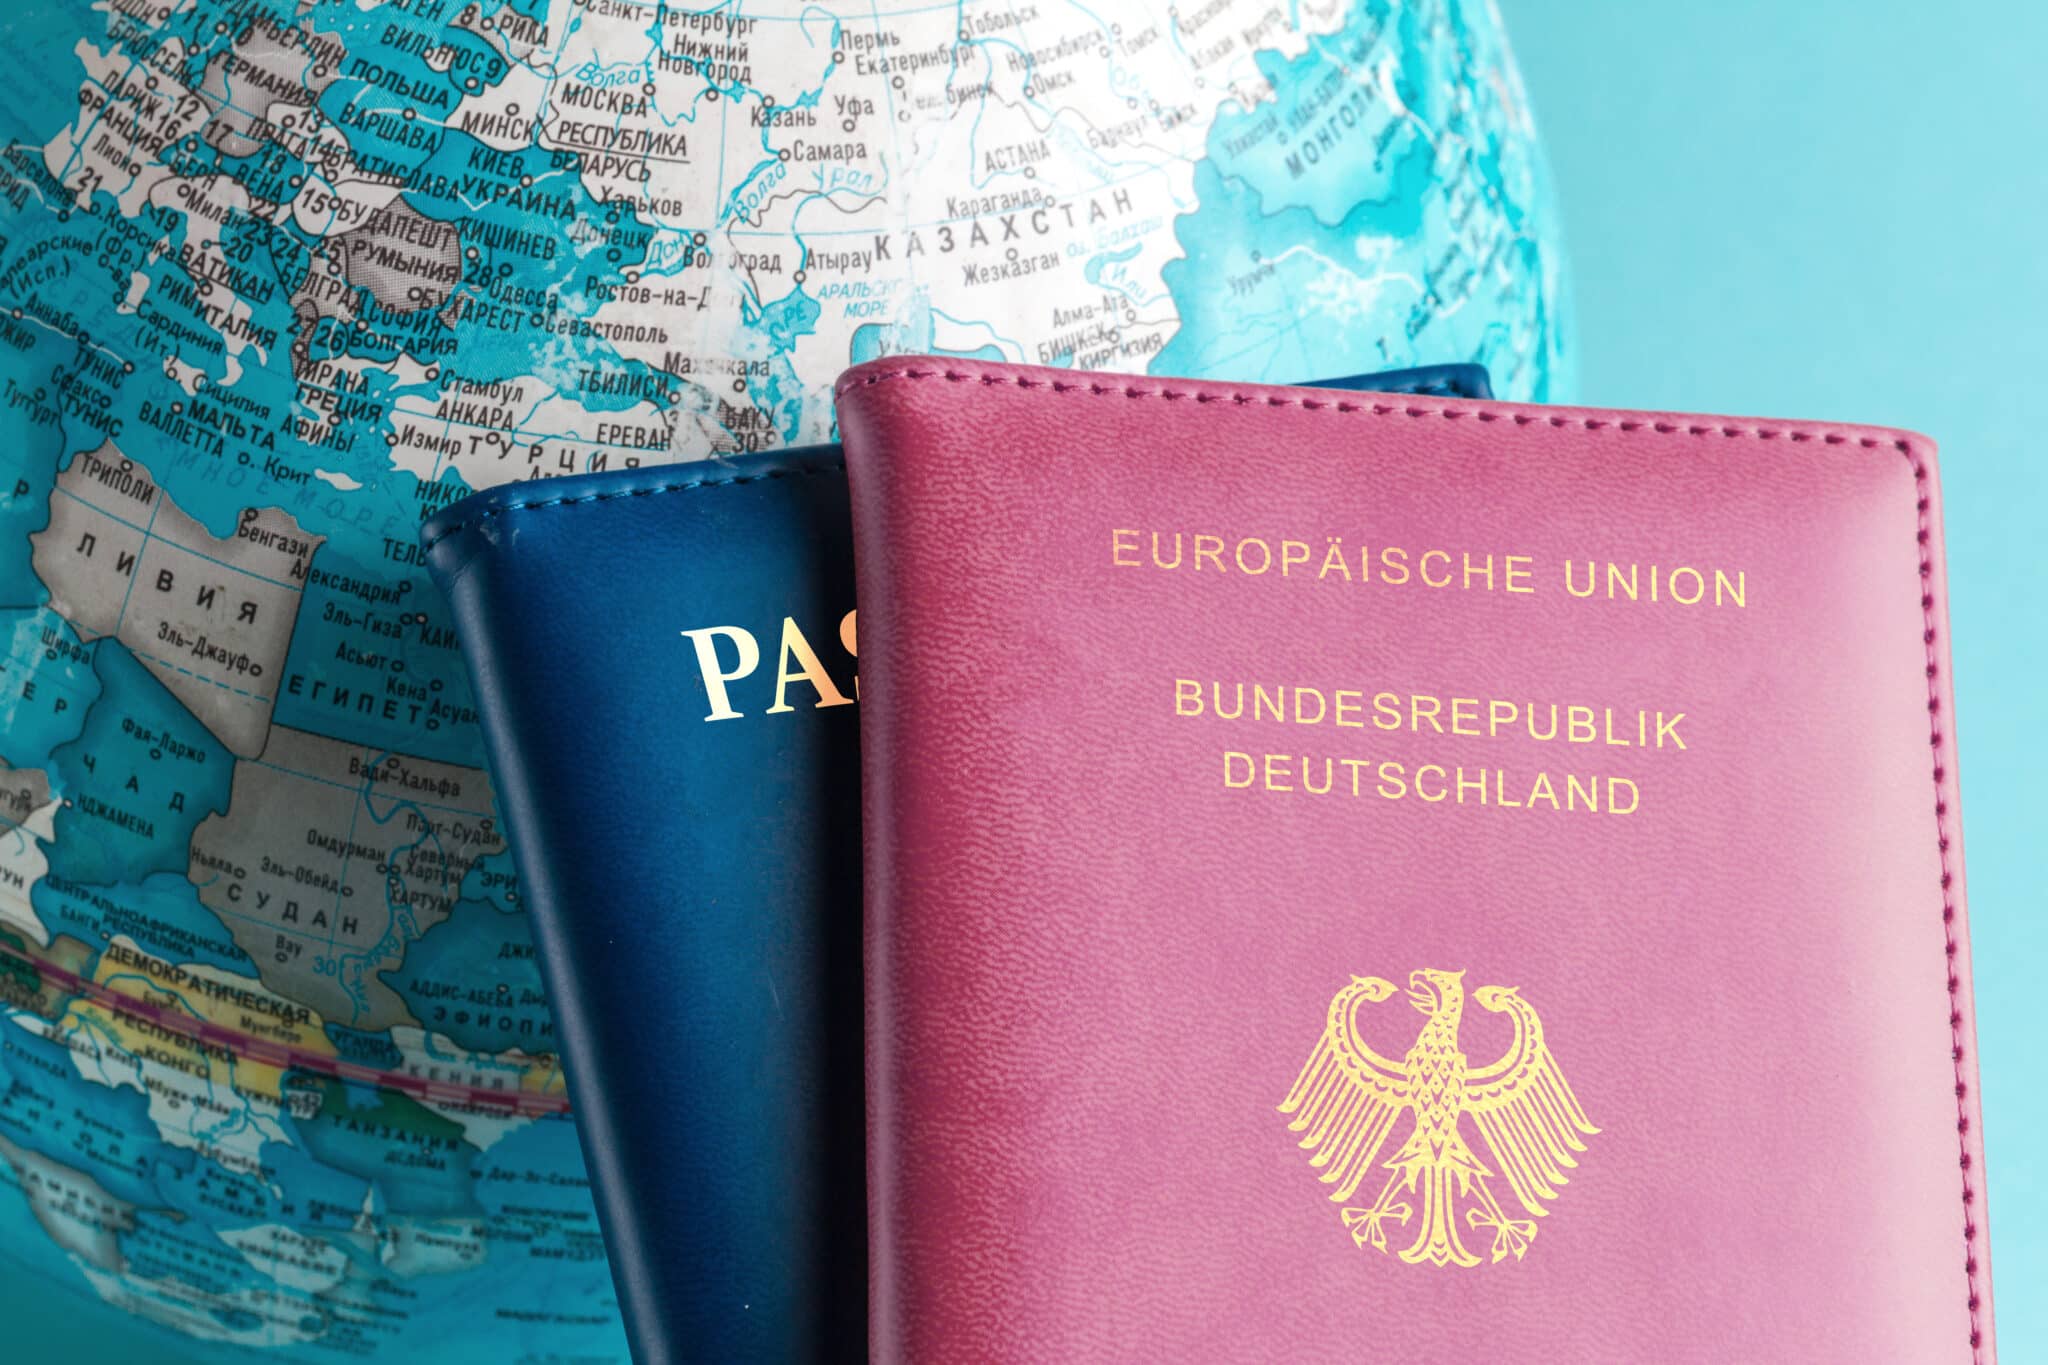 Două pașapoarte, unul cu mențiunea &quot;European Union Federal Republic of Germany&quot; (Uniunea Europeană - Republica Federală Germania) și celălalt doar cu mențiunea &quot;Passport&quot; (Pașaport), sunt așezate pe un glob pământesc cu accent pe Europa, simbolizând dubla cetățenie.